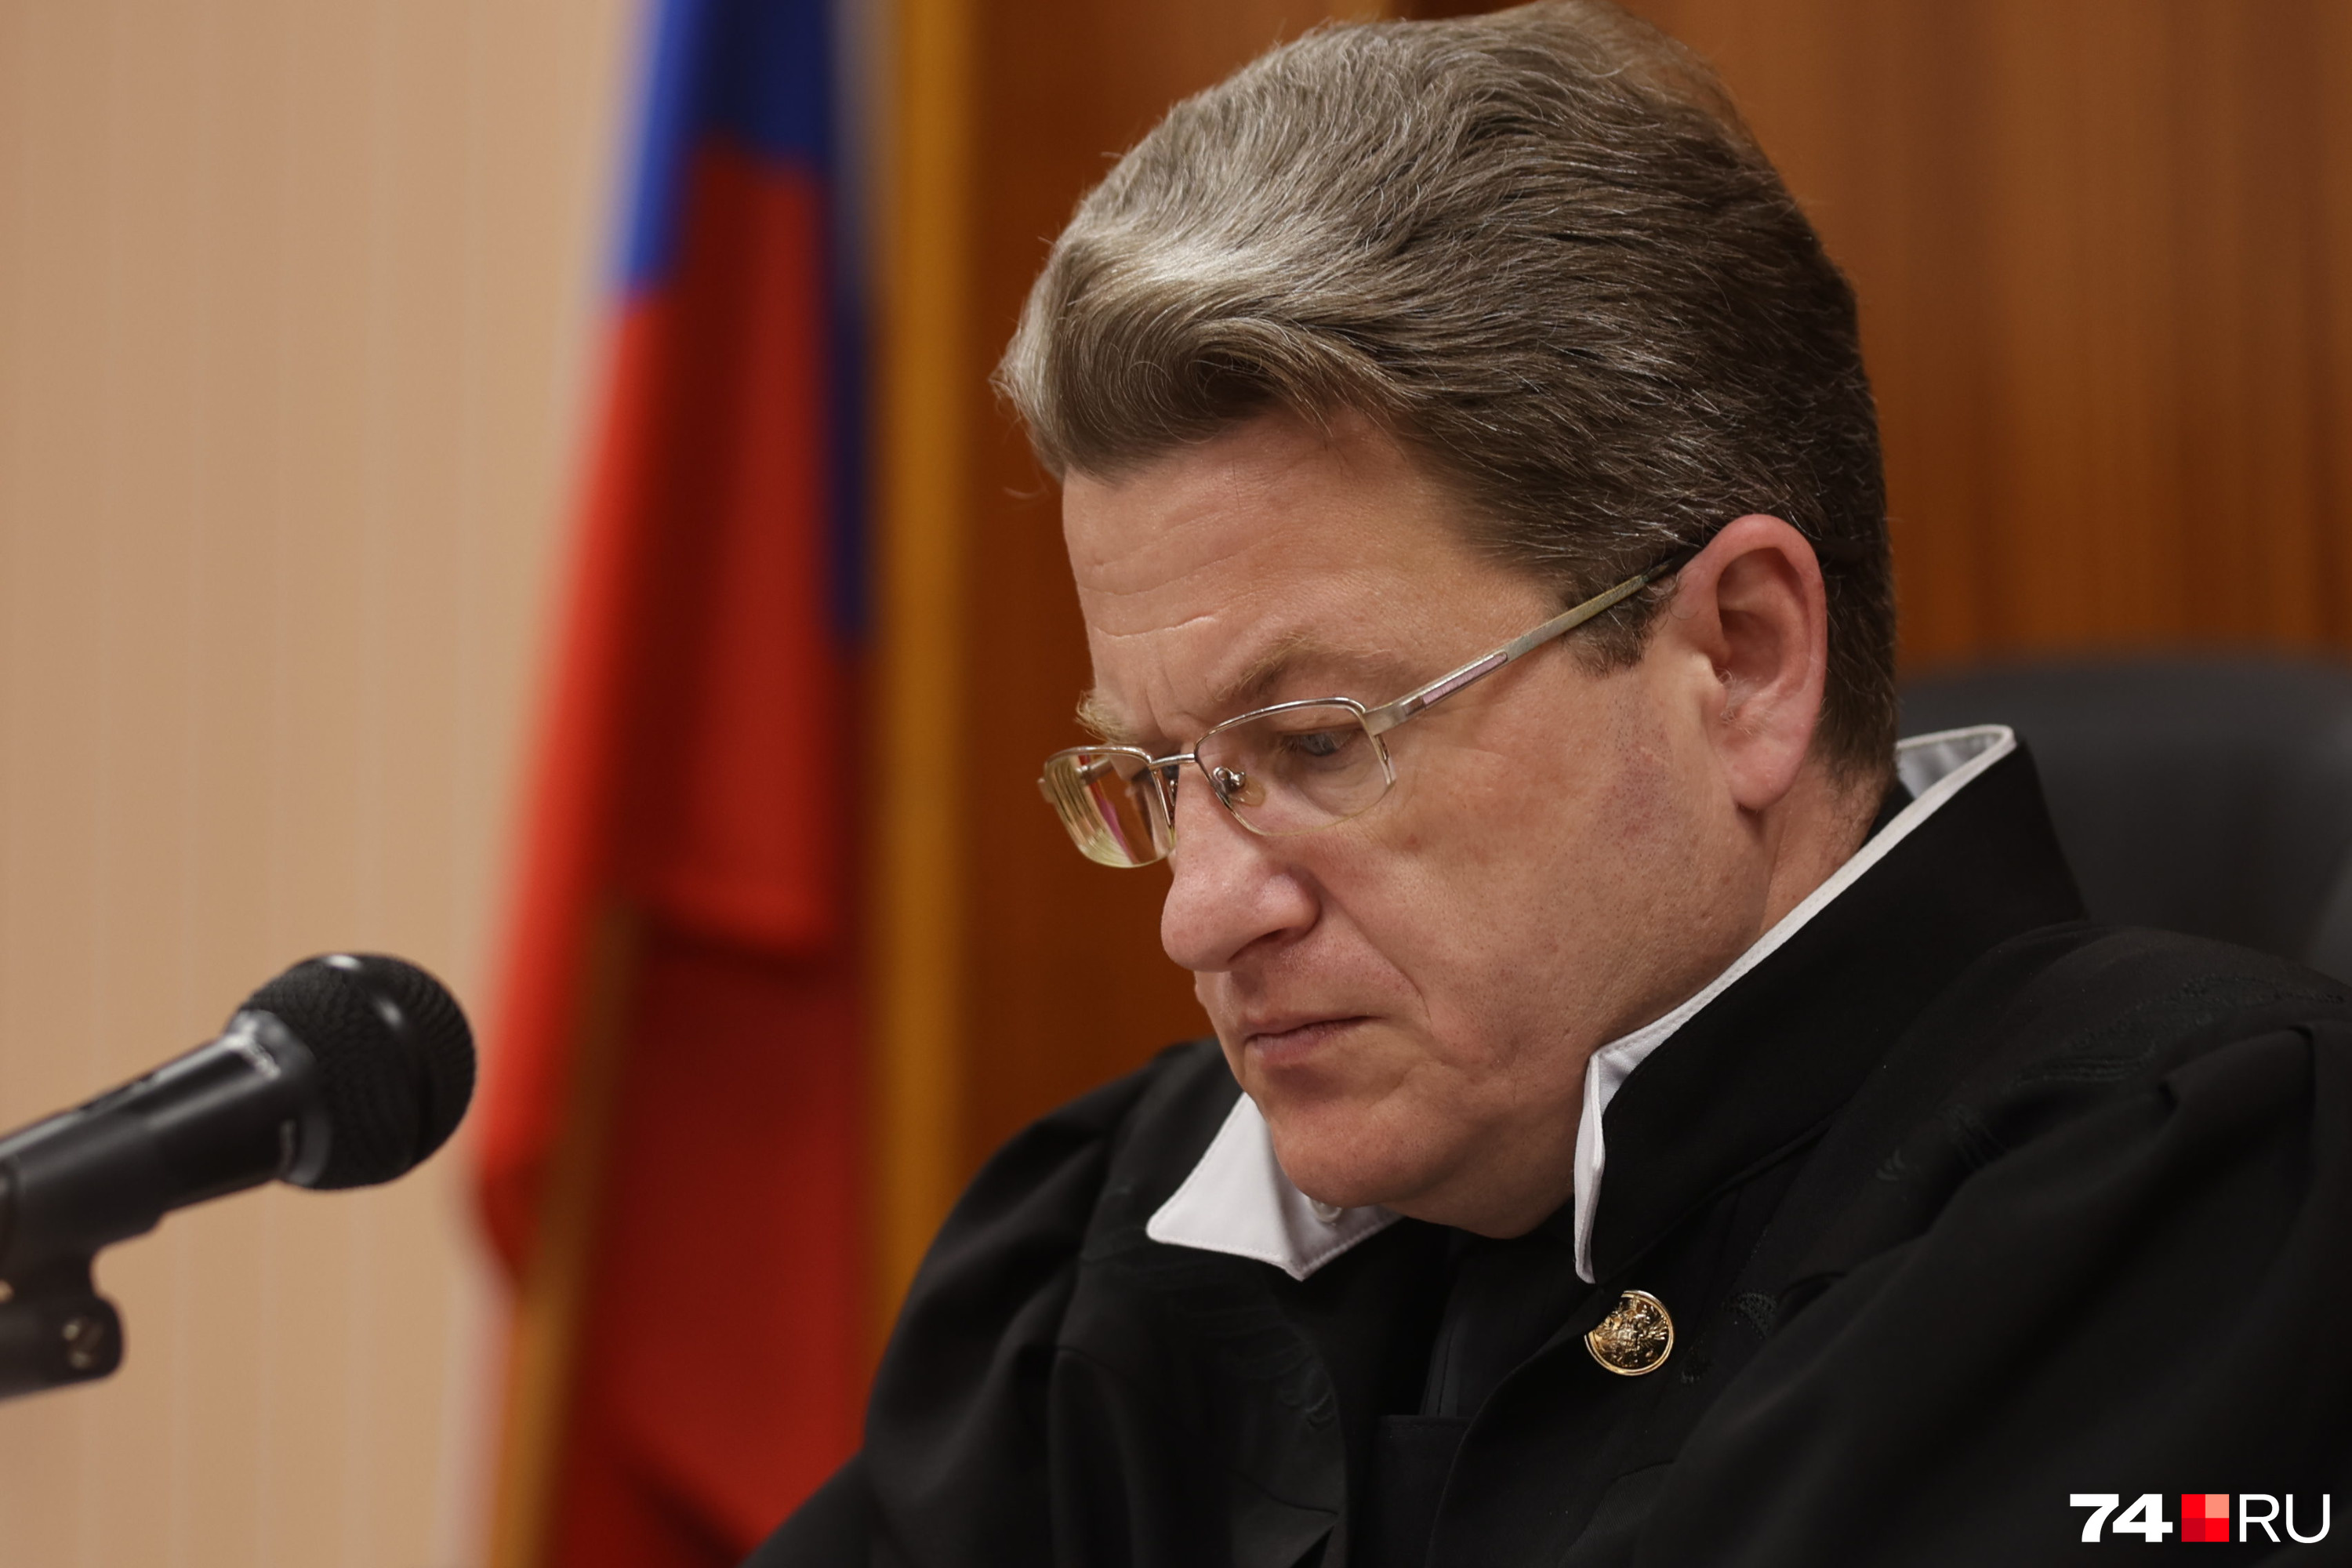 В итоге судья оставил без изменения решение о взятии Дмитрия Зыкова под стражу